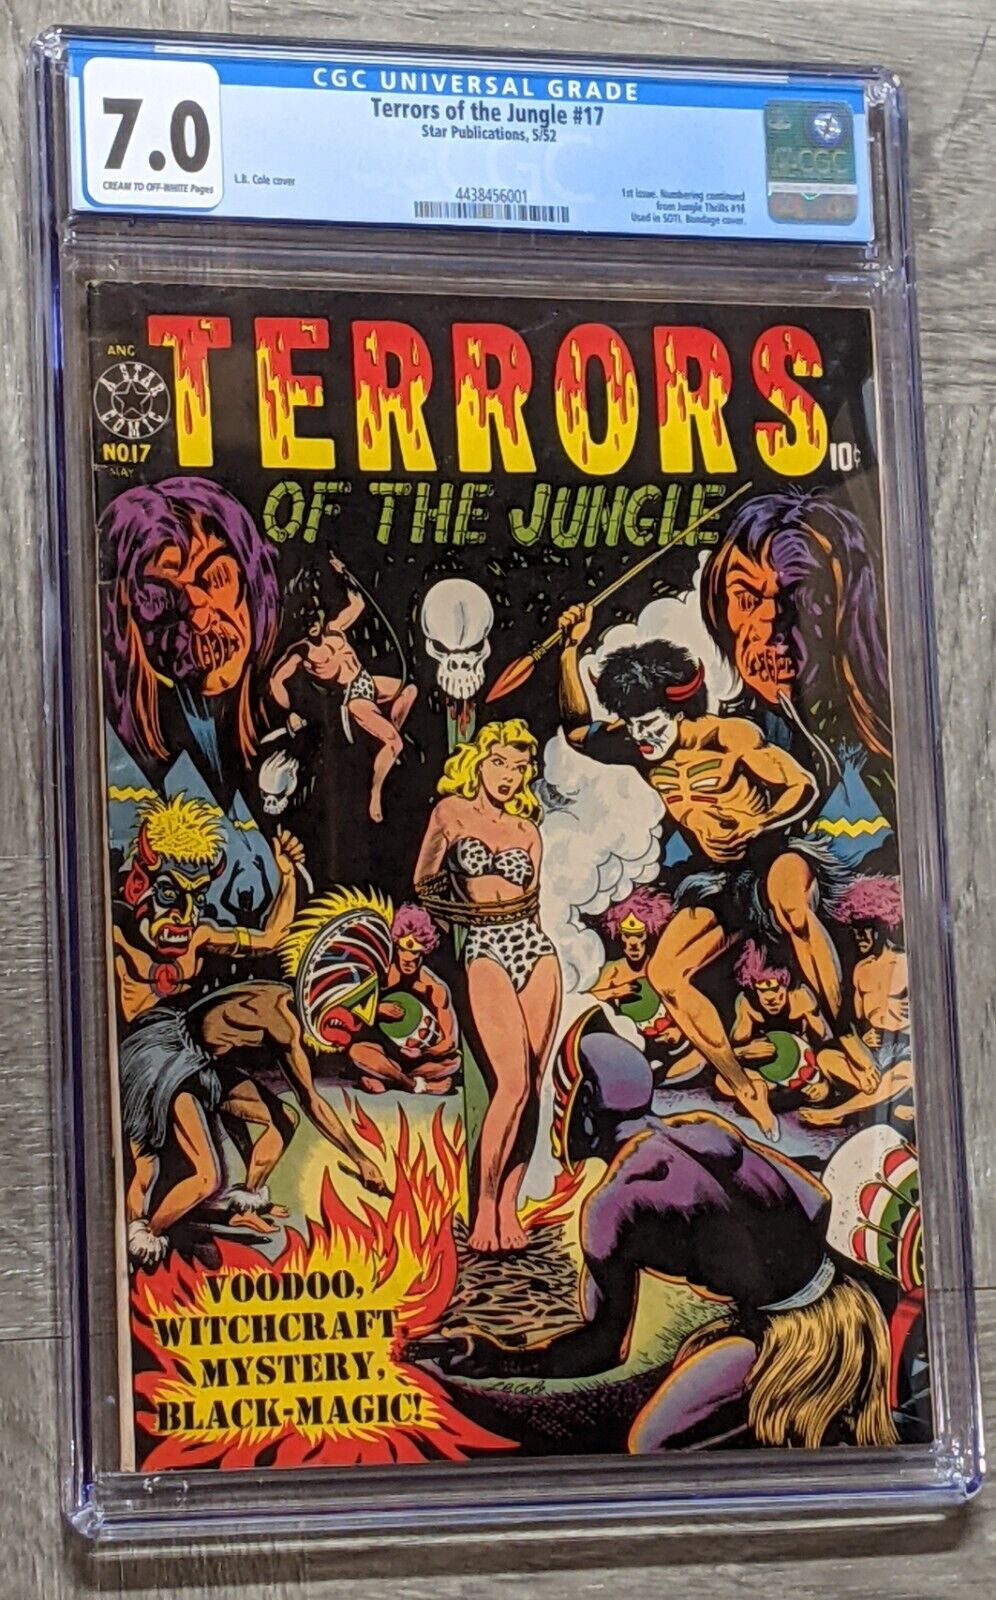 Terrors of the Jungle #17 CGC 7.0 Star Pub. 1952 LB Cole Cover  #1  SOTI  L.B.